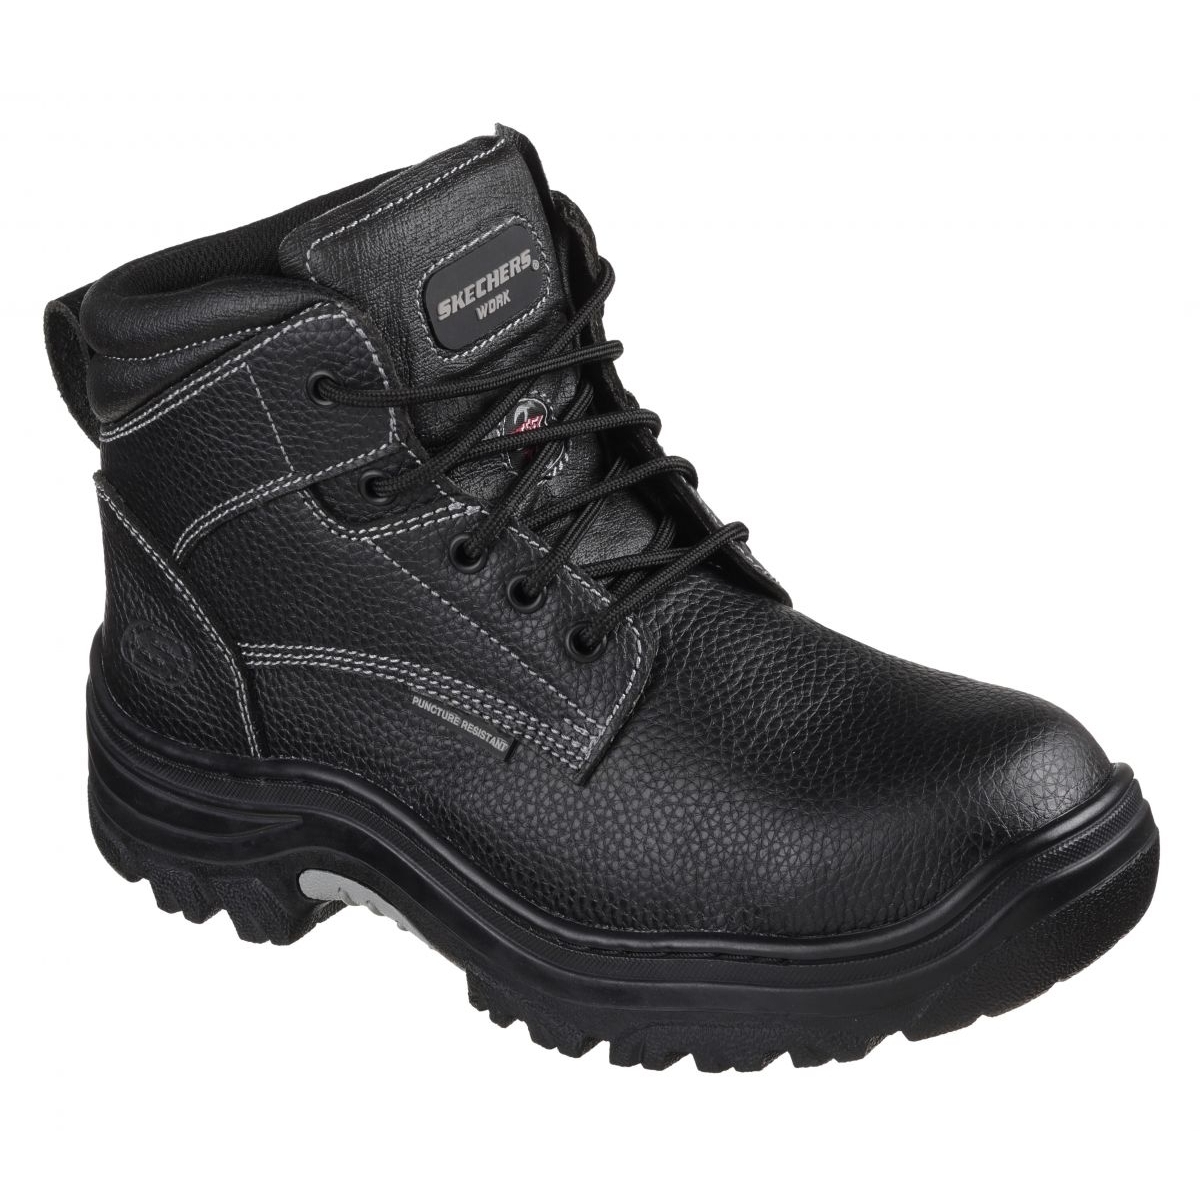 Skechers Men's Burgin-Tarlac Industrial Boot Varies BLACK - BLACK, 7.5 Wide